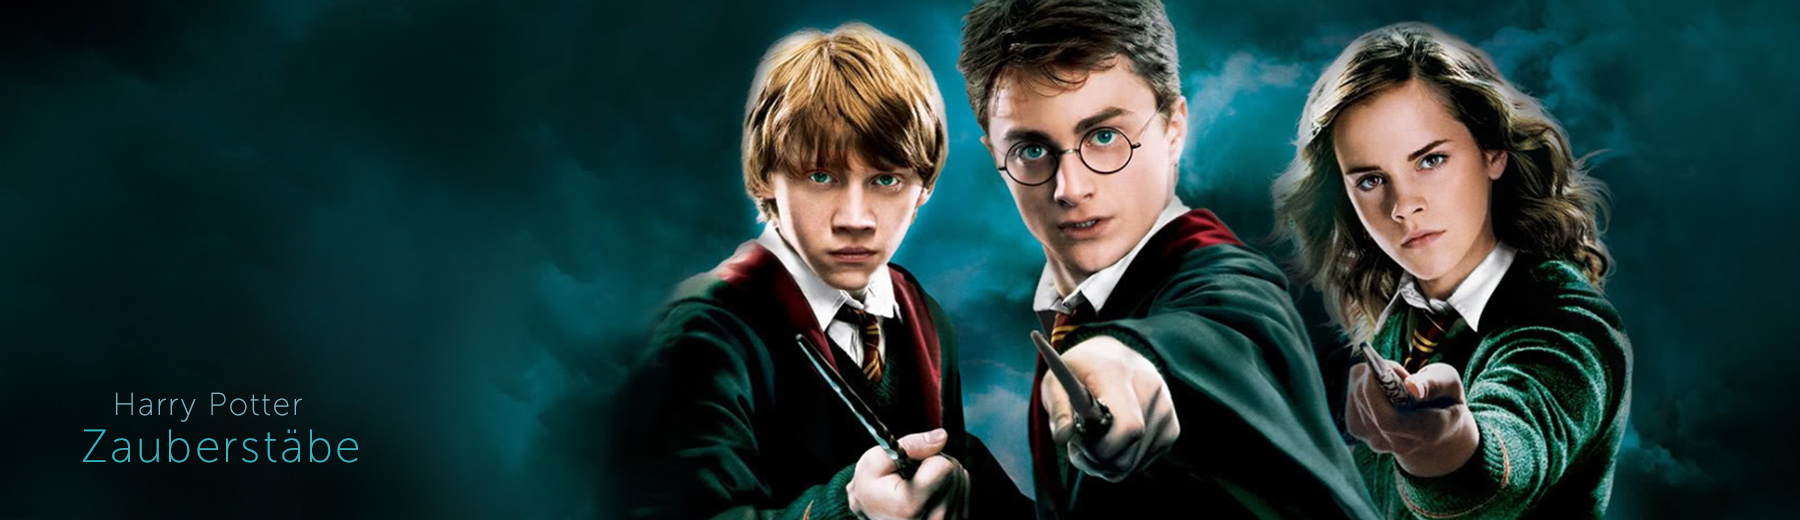 Harry Potter Zauberstabe Finde Den Richtigen Elbenwald